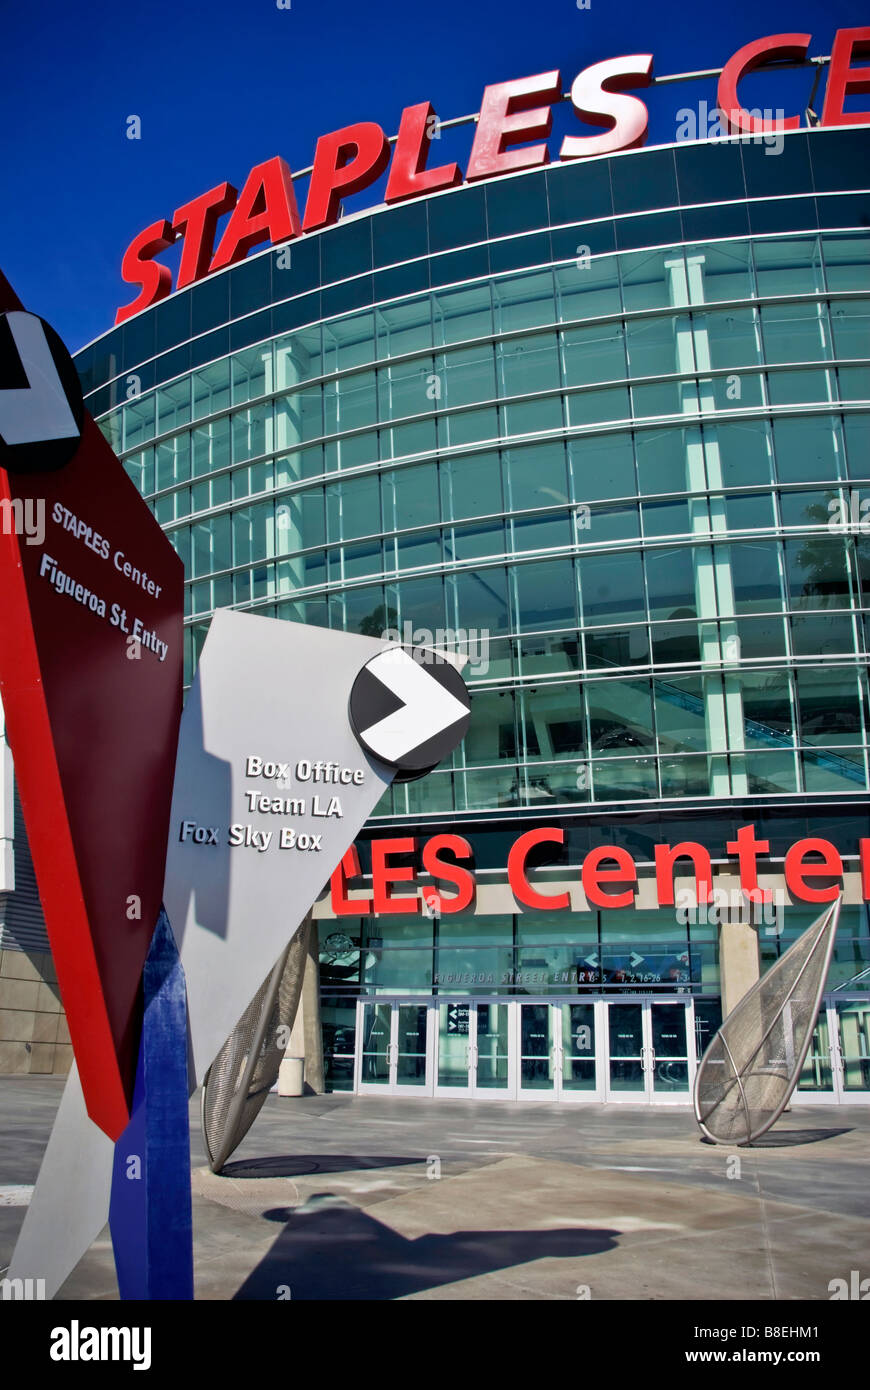 Staples Center Arena multi-sports Centre-ville de Los Angeles, Californie Banque D'Images